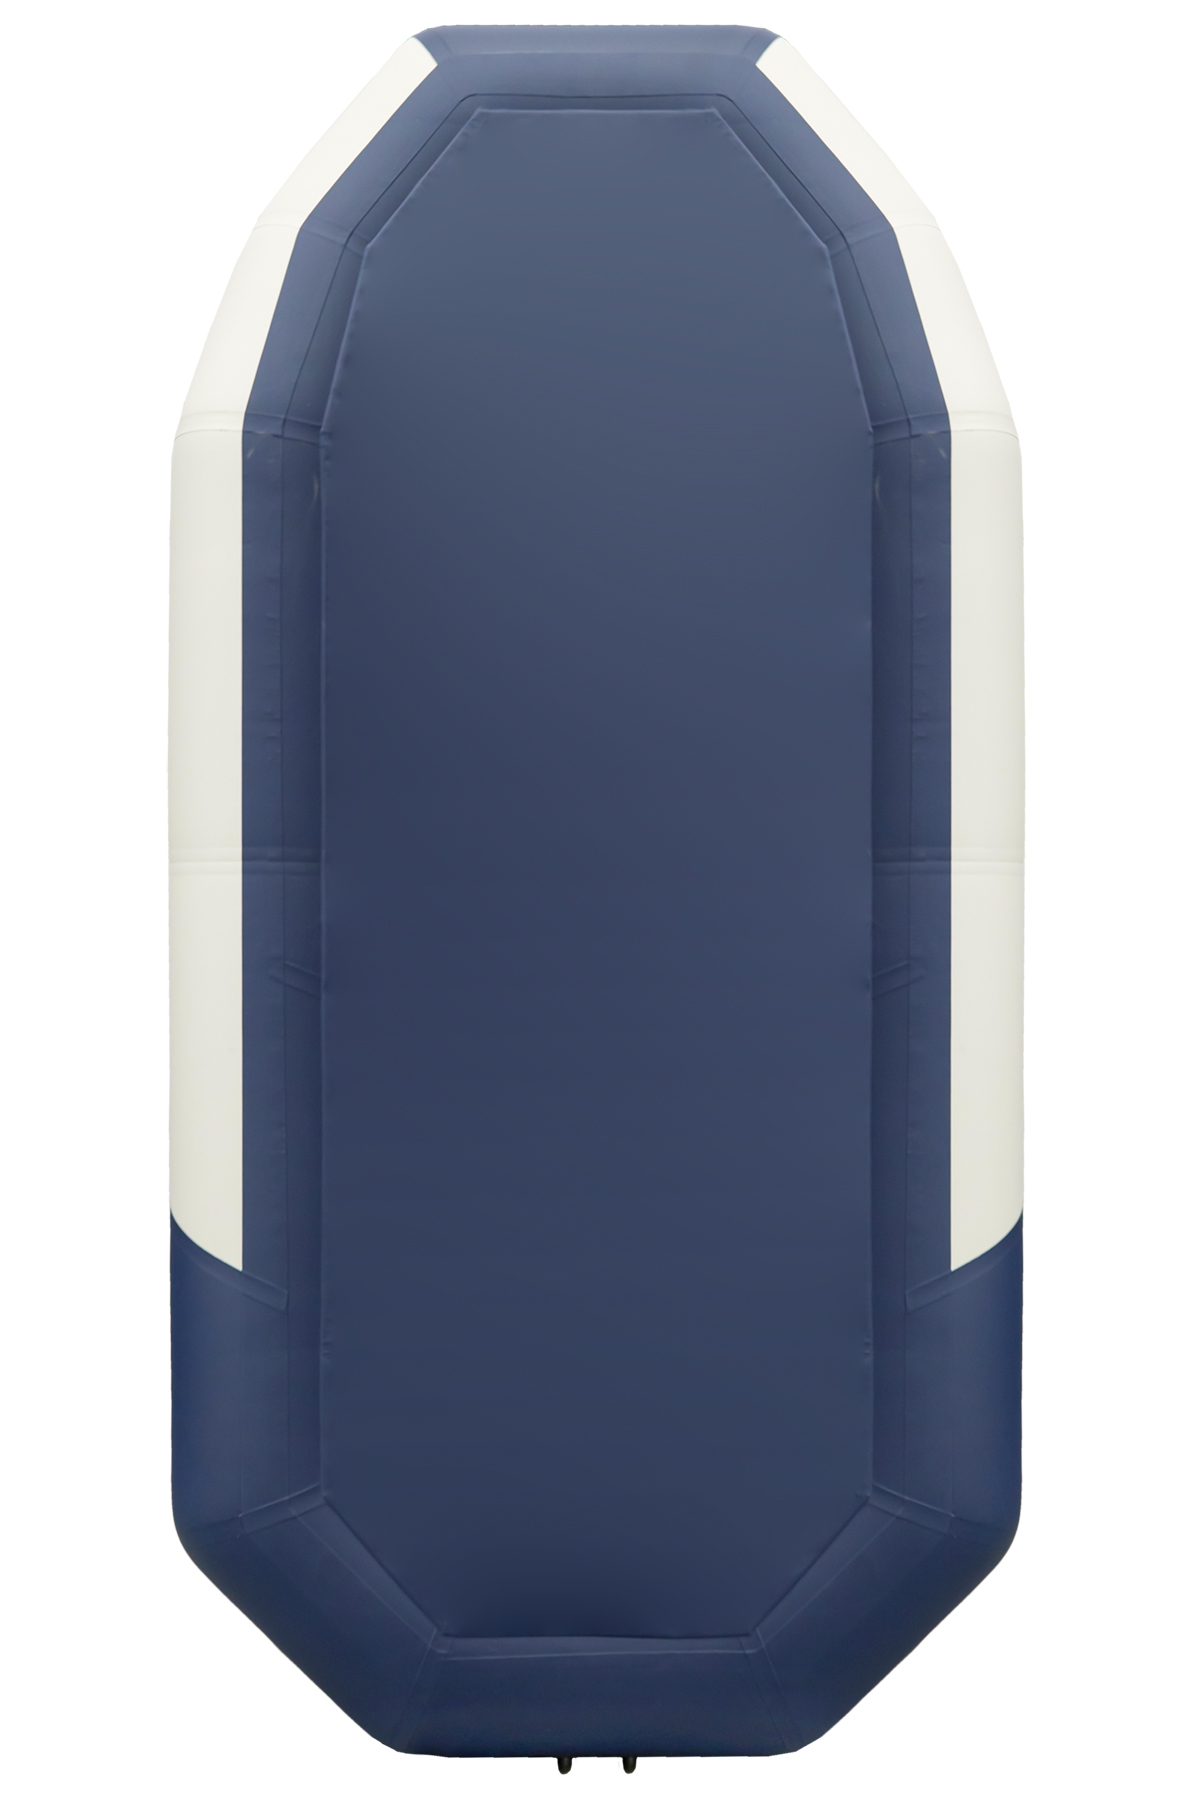 Таймень NX 270 "Комби" светло-серый/синий фото 2